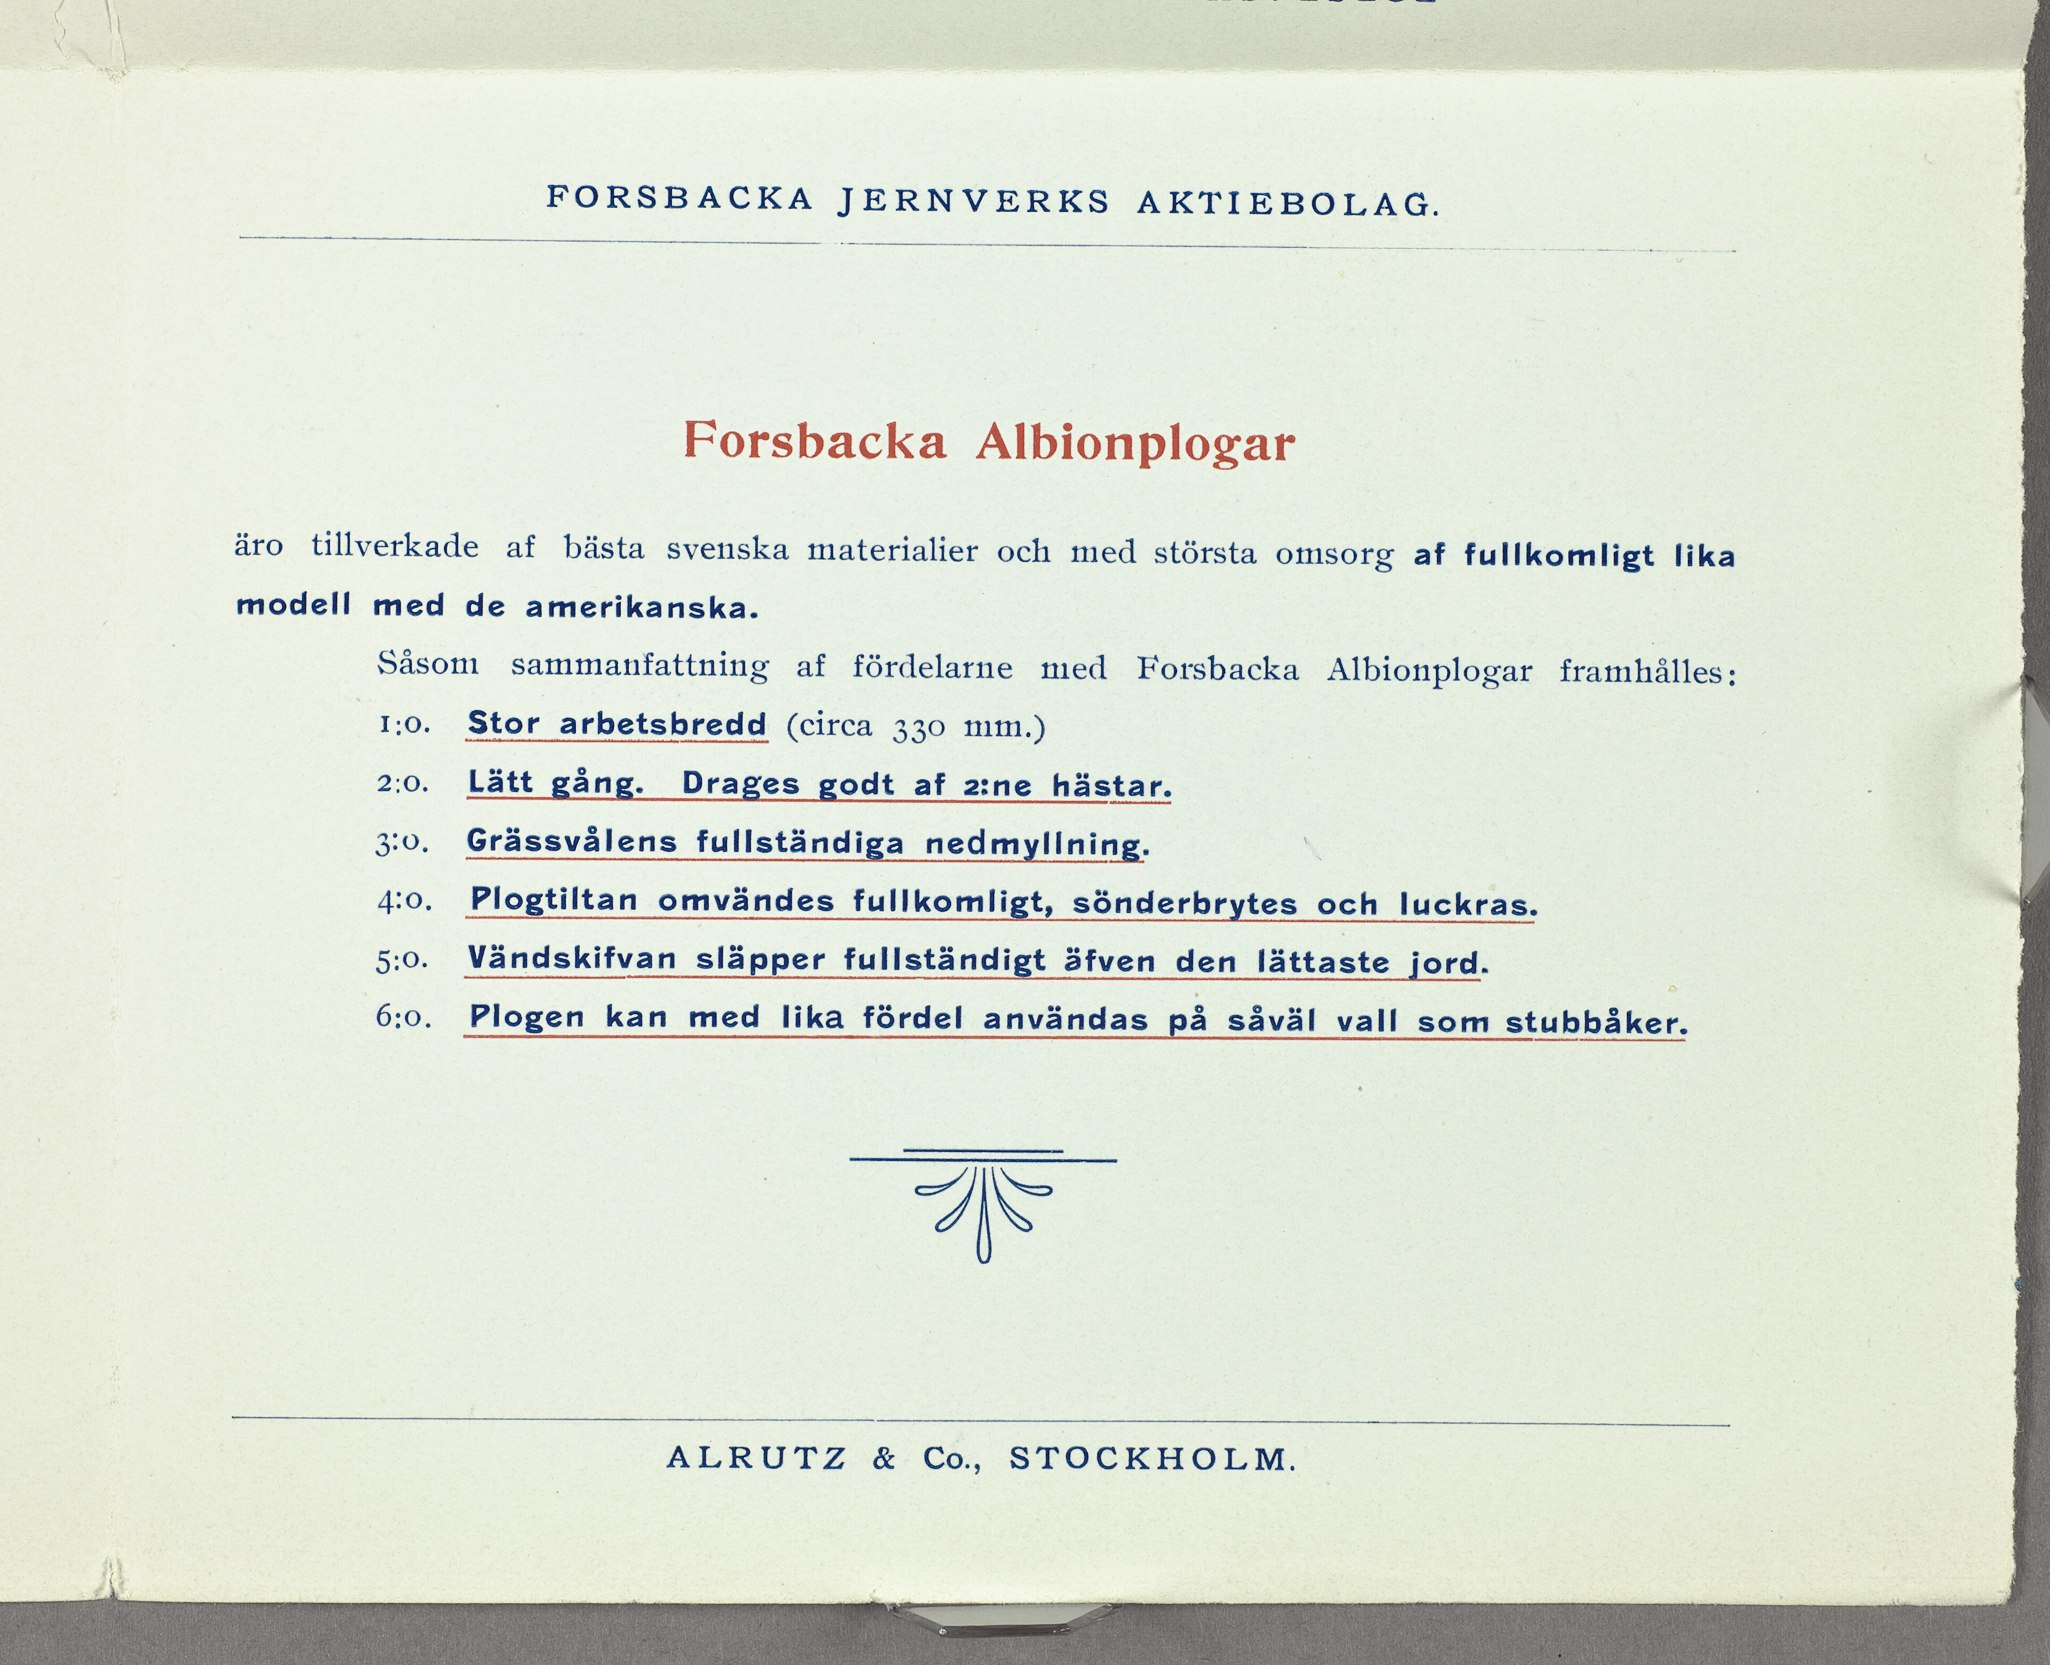 Forsbacka Albionplogar äro tillverkade af bästa svenska materialier och med största omsorg af fullkomligt lika modell med de amerikanska.